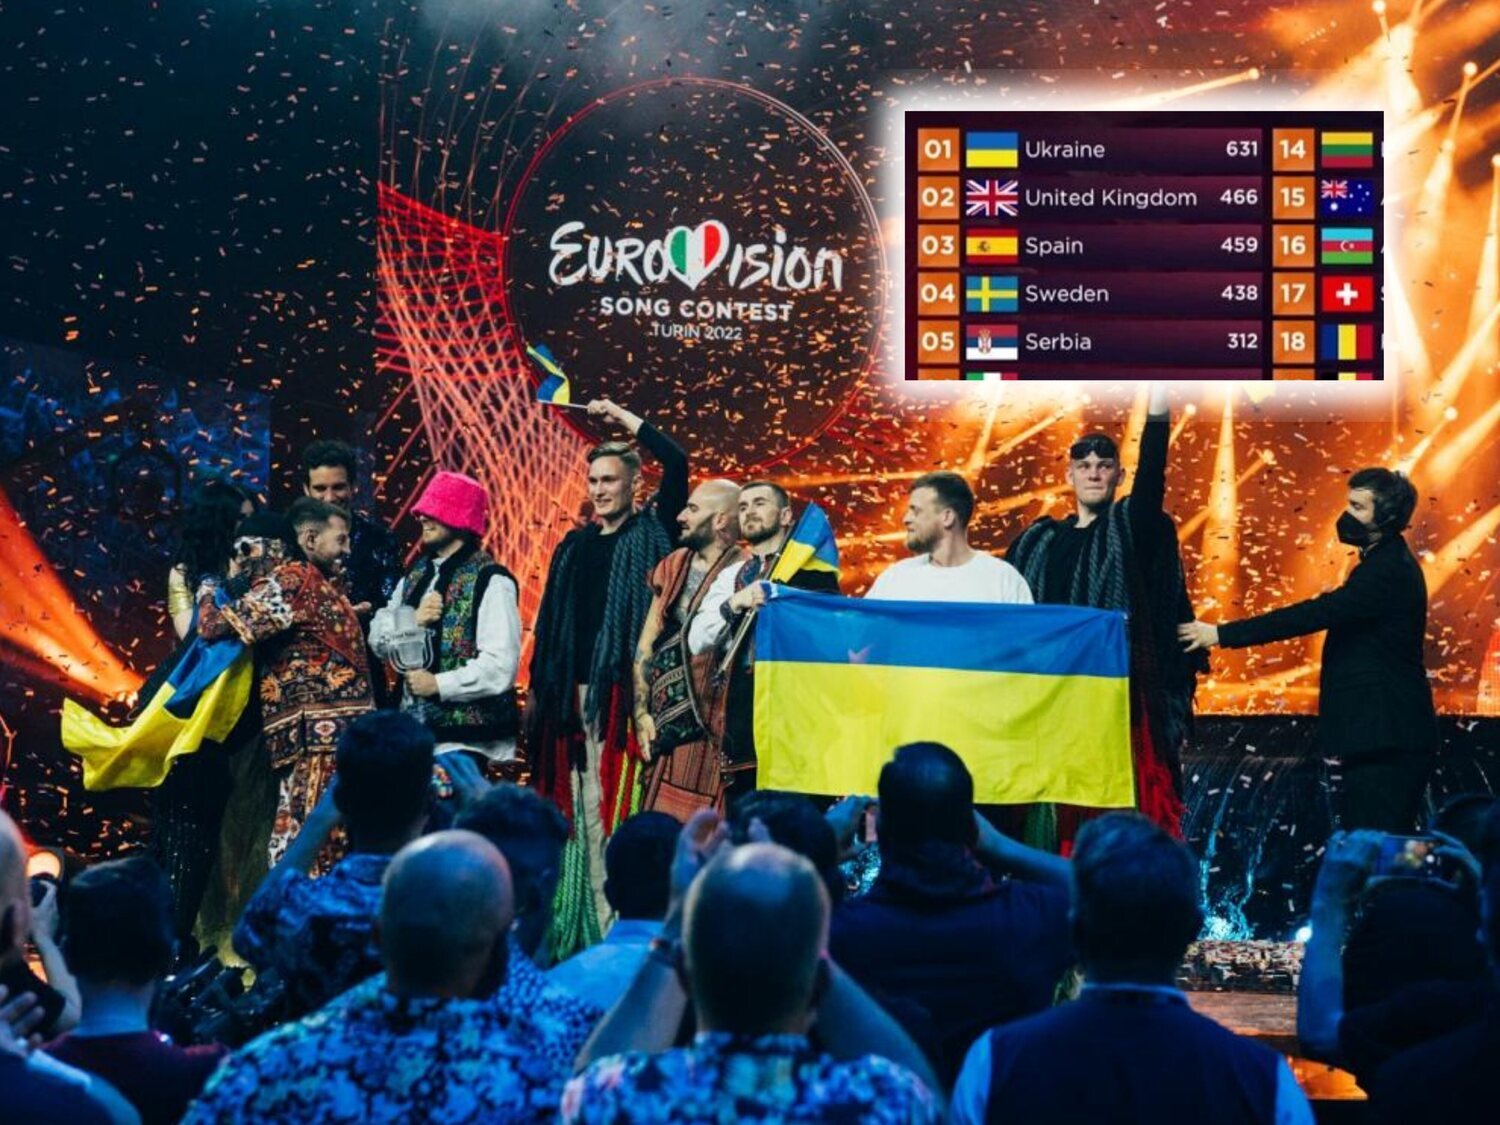 Polémica con la votaciones de Eurovisión: ¿Cómo afecta a la posición de España?